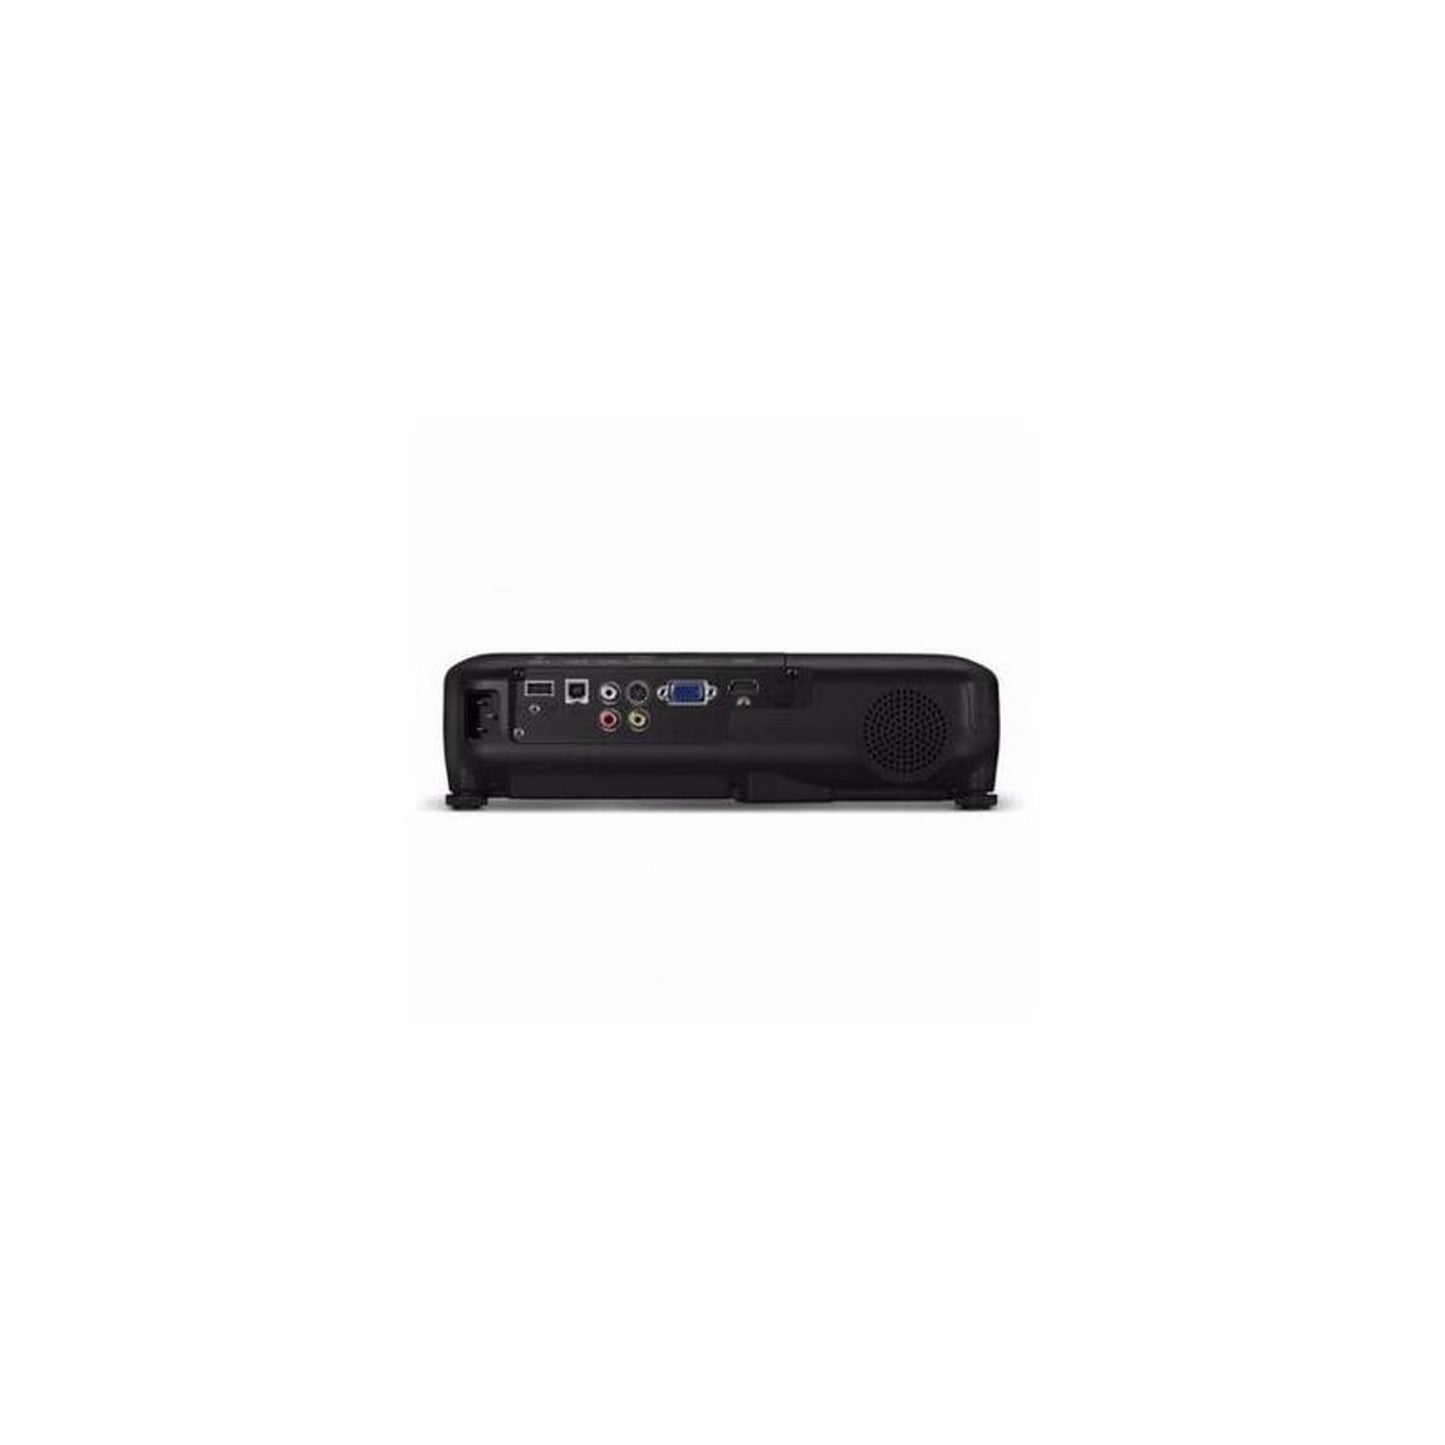 Videoproyector Powerlite S31+ Svga 3lcd,eps V11h719021